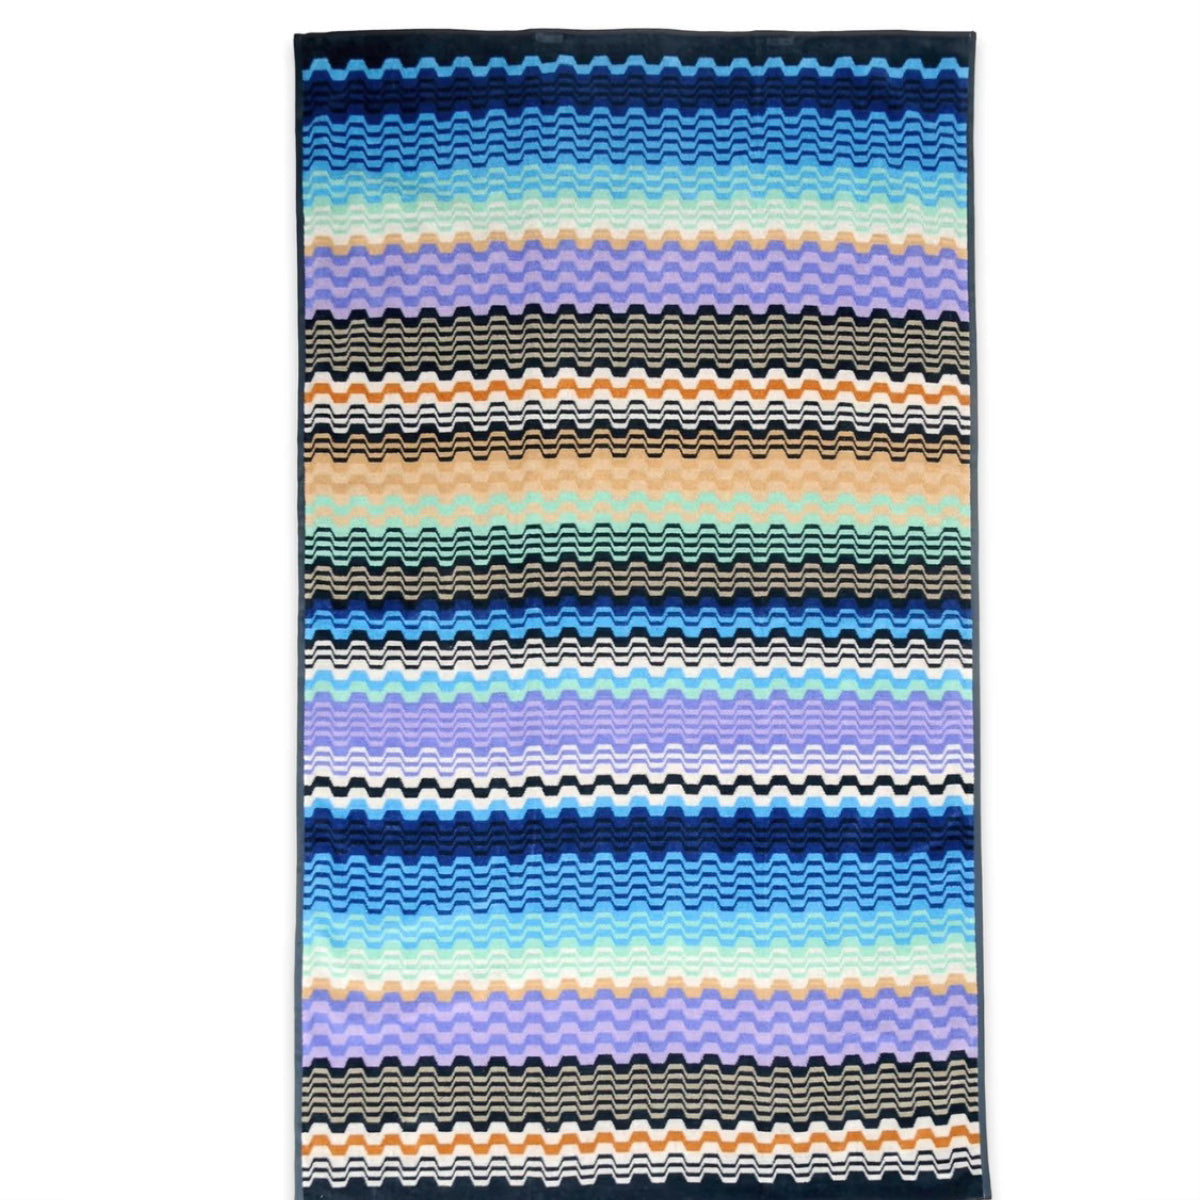 Luksus Missoni håndklæder - LARA BLUE  170 I grønlykke.com